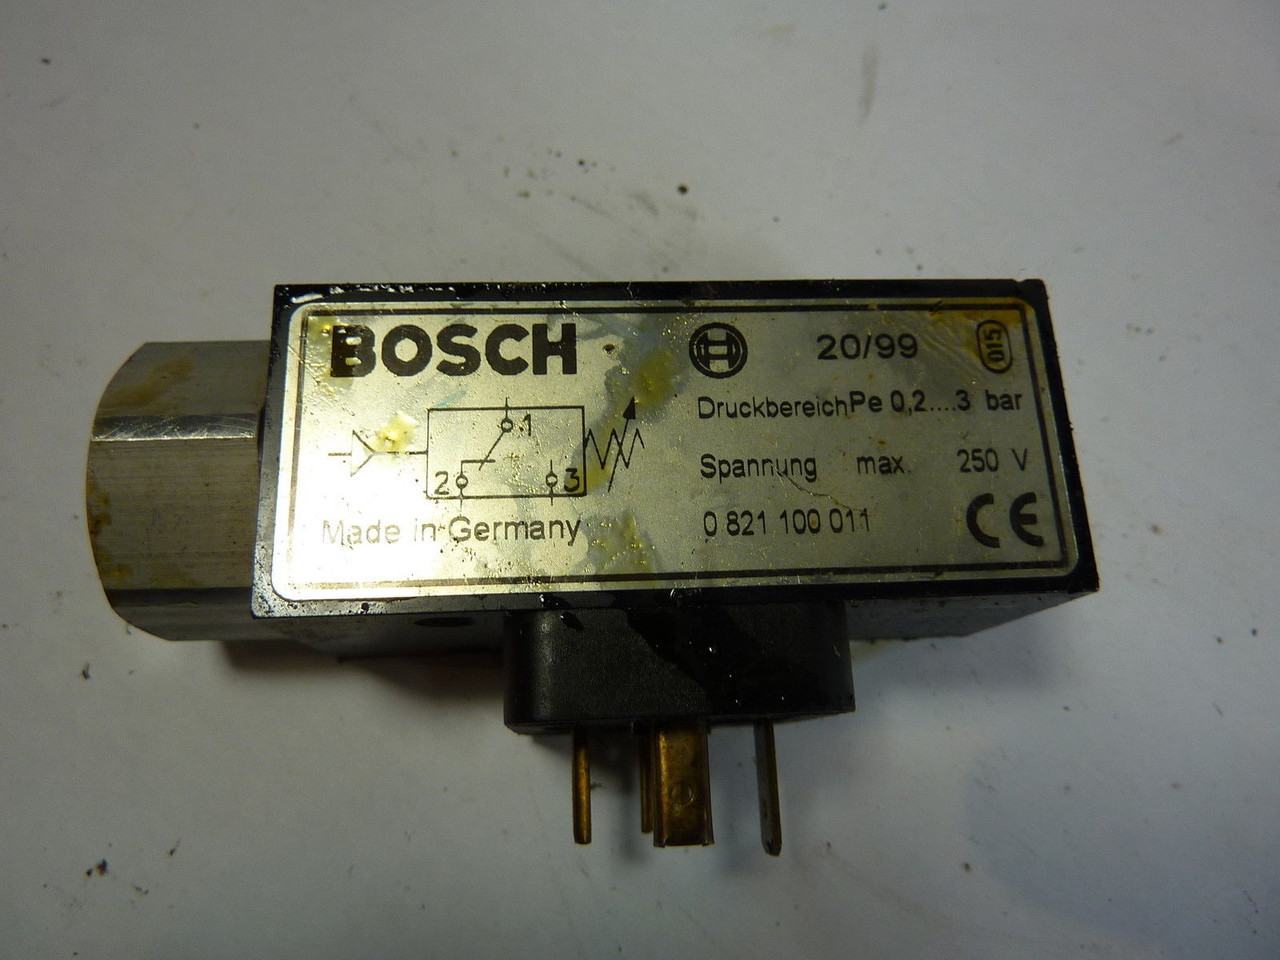 Bosch 20/99 Solenoid Valve 250V USED